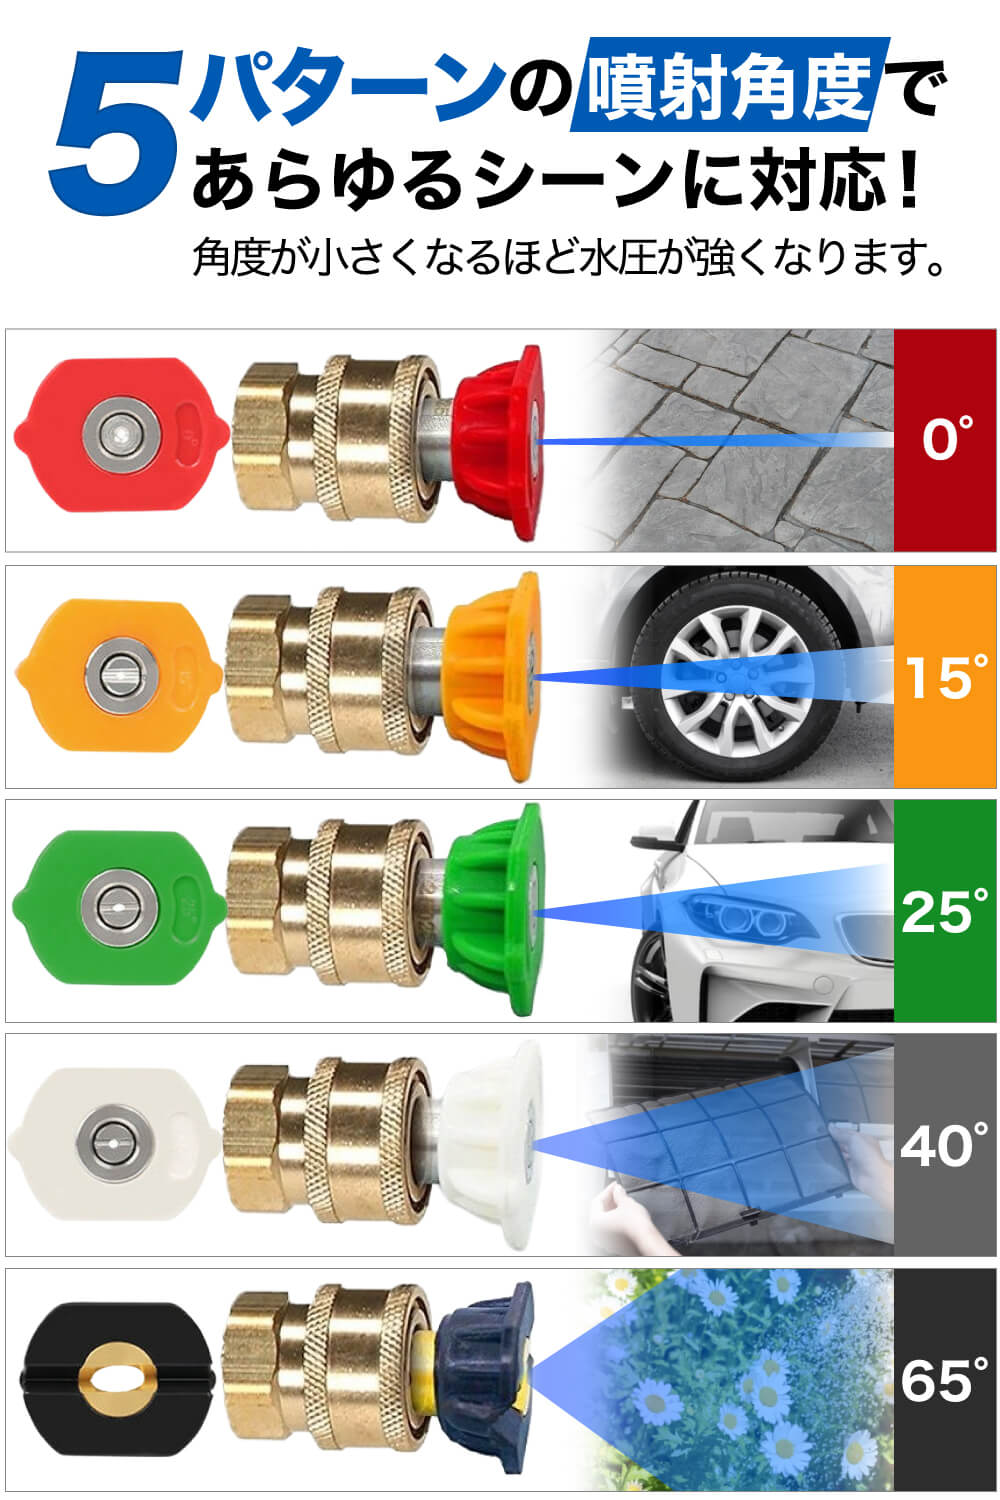 ケルヒャーKシリーズ用ガンアダプター【収納タイプ】(1/4クイックカプラに変換)＋5個スプレーチップ